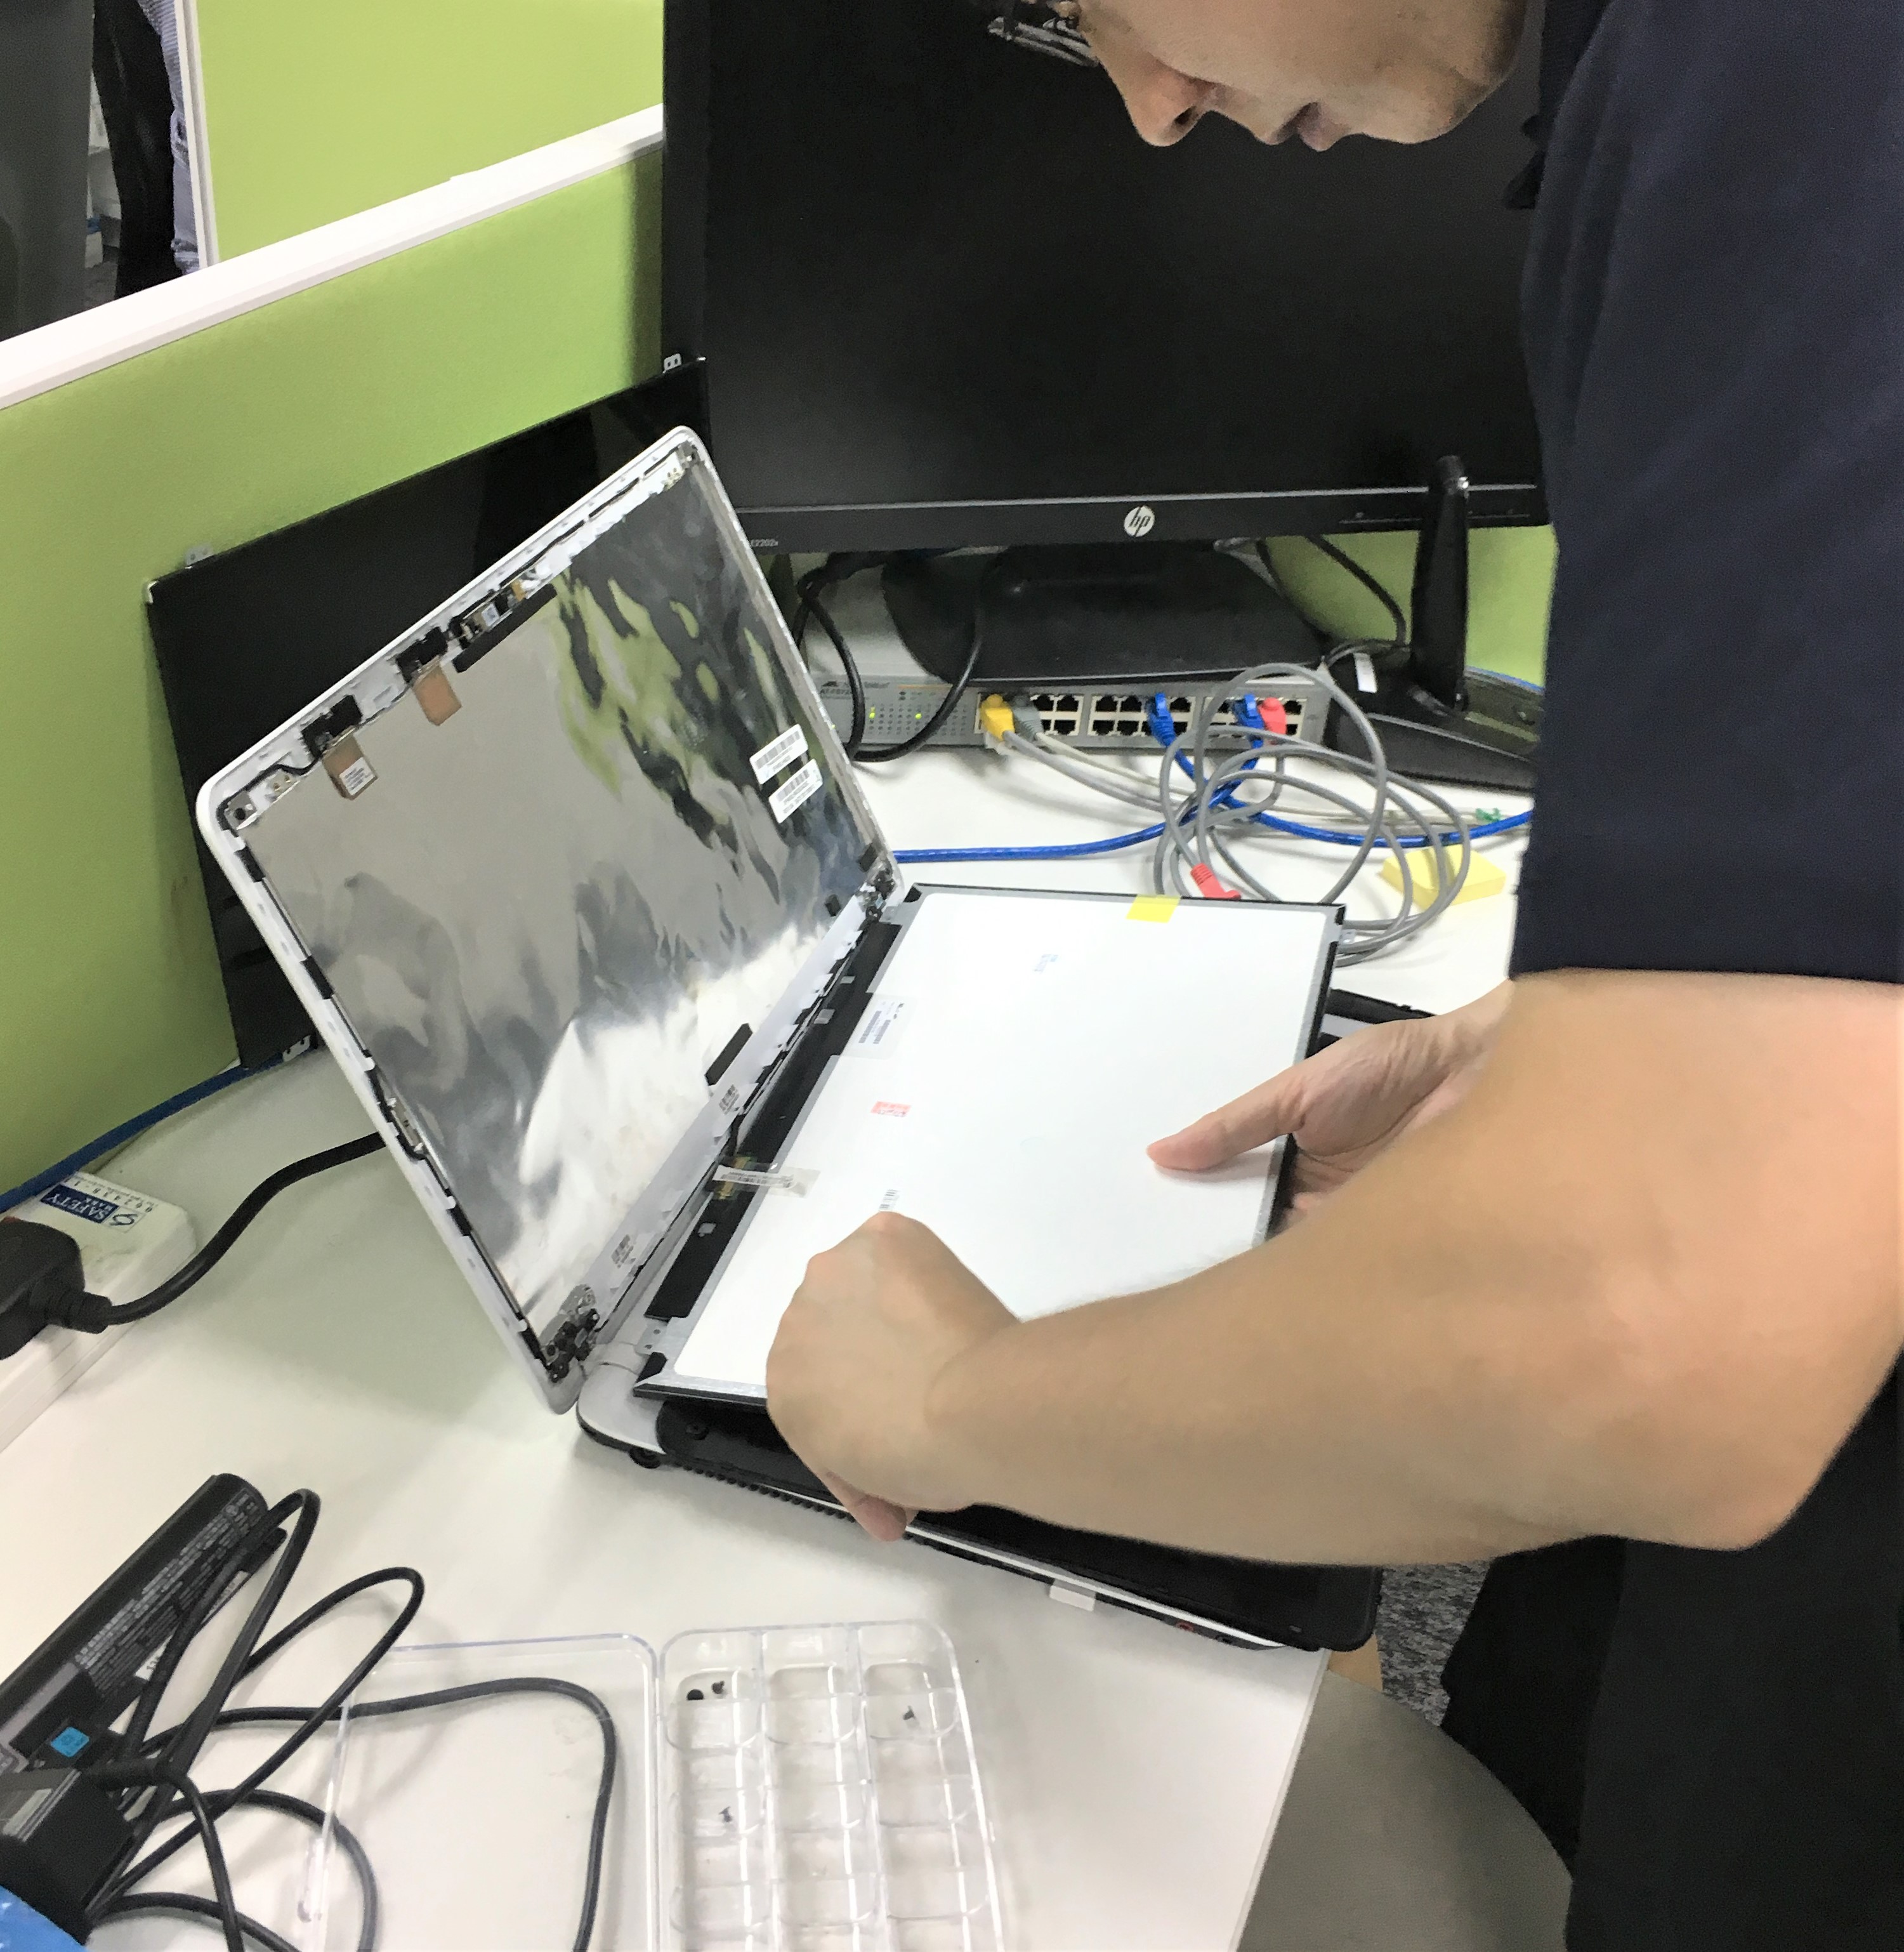 パソコン液晶画面が壊れた どうしたら良い シンガポールのパソコン修理はカワテック